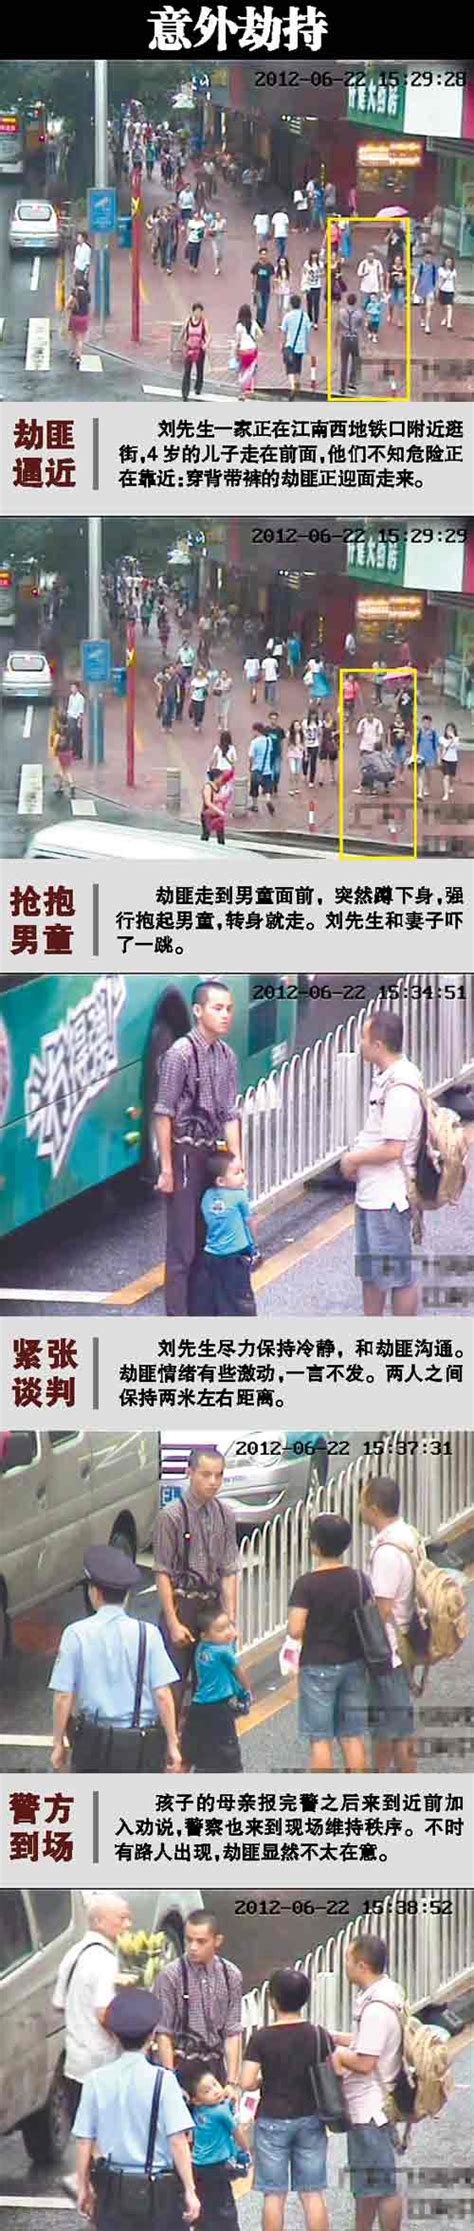 广州"夺刀侠"街头勇救4岁男童 救人后悄然离去 - 感人瞬间 - 文明风